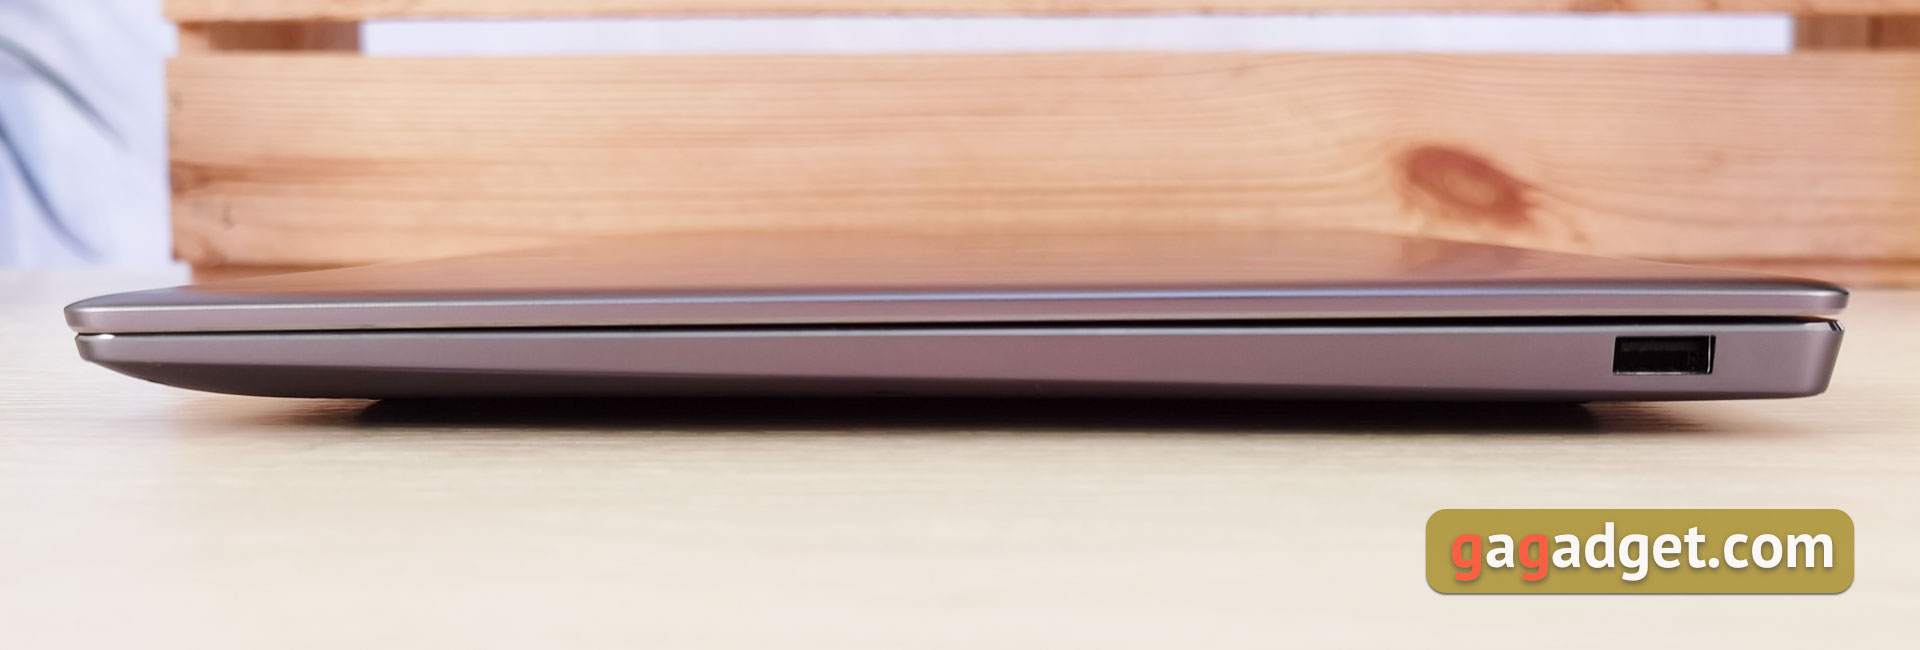 Recenzja Huawei MateBook 14s: laptop Huawei z usługami Google i szybkim ekranem-6